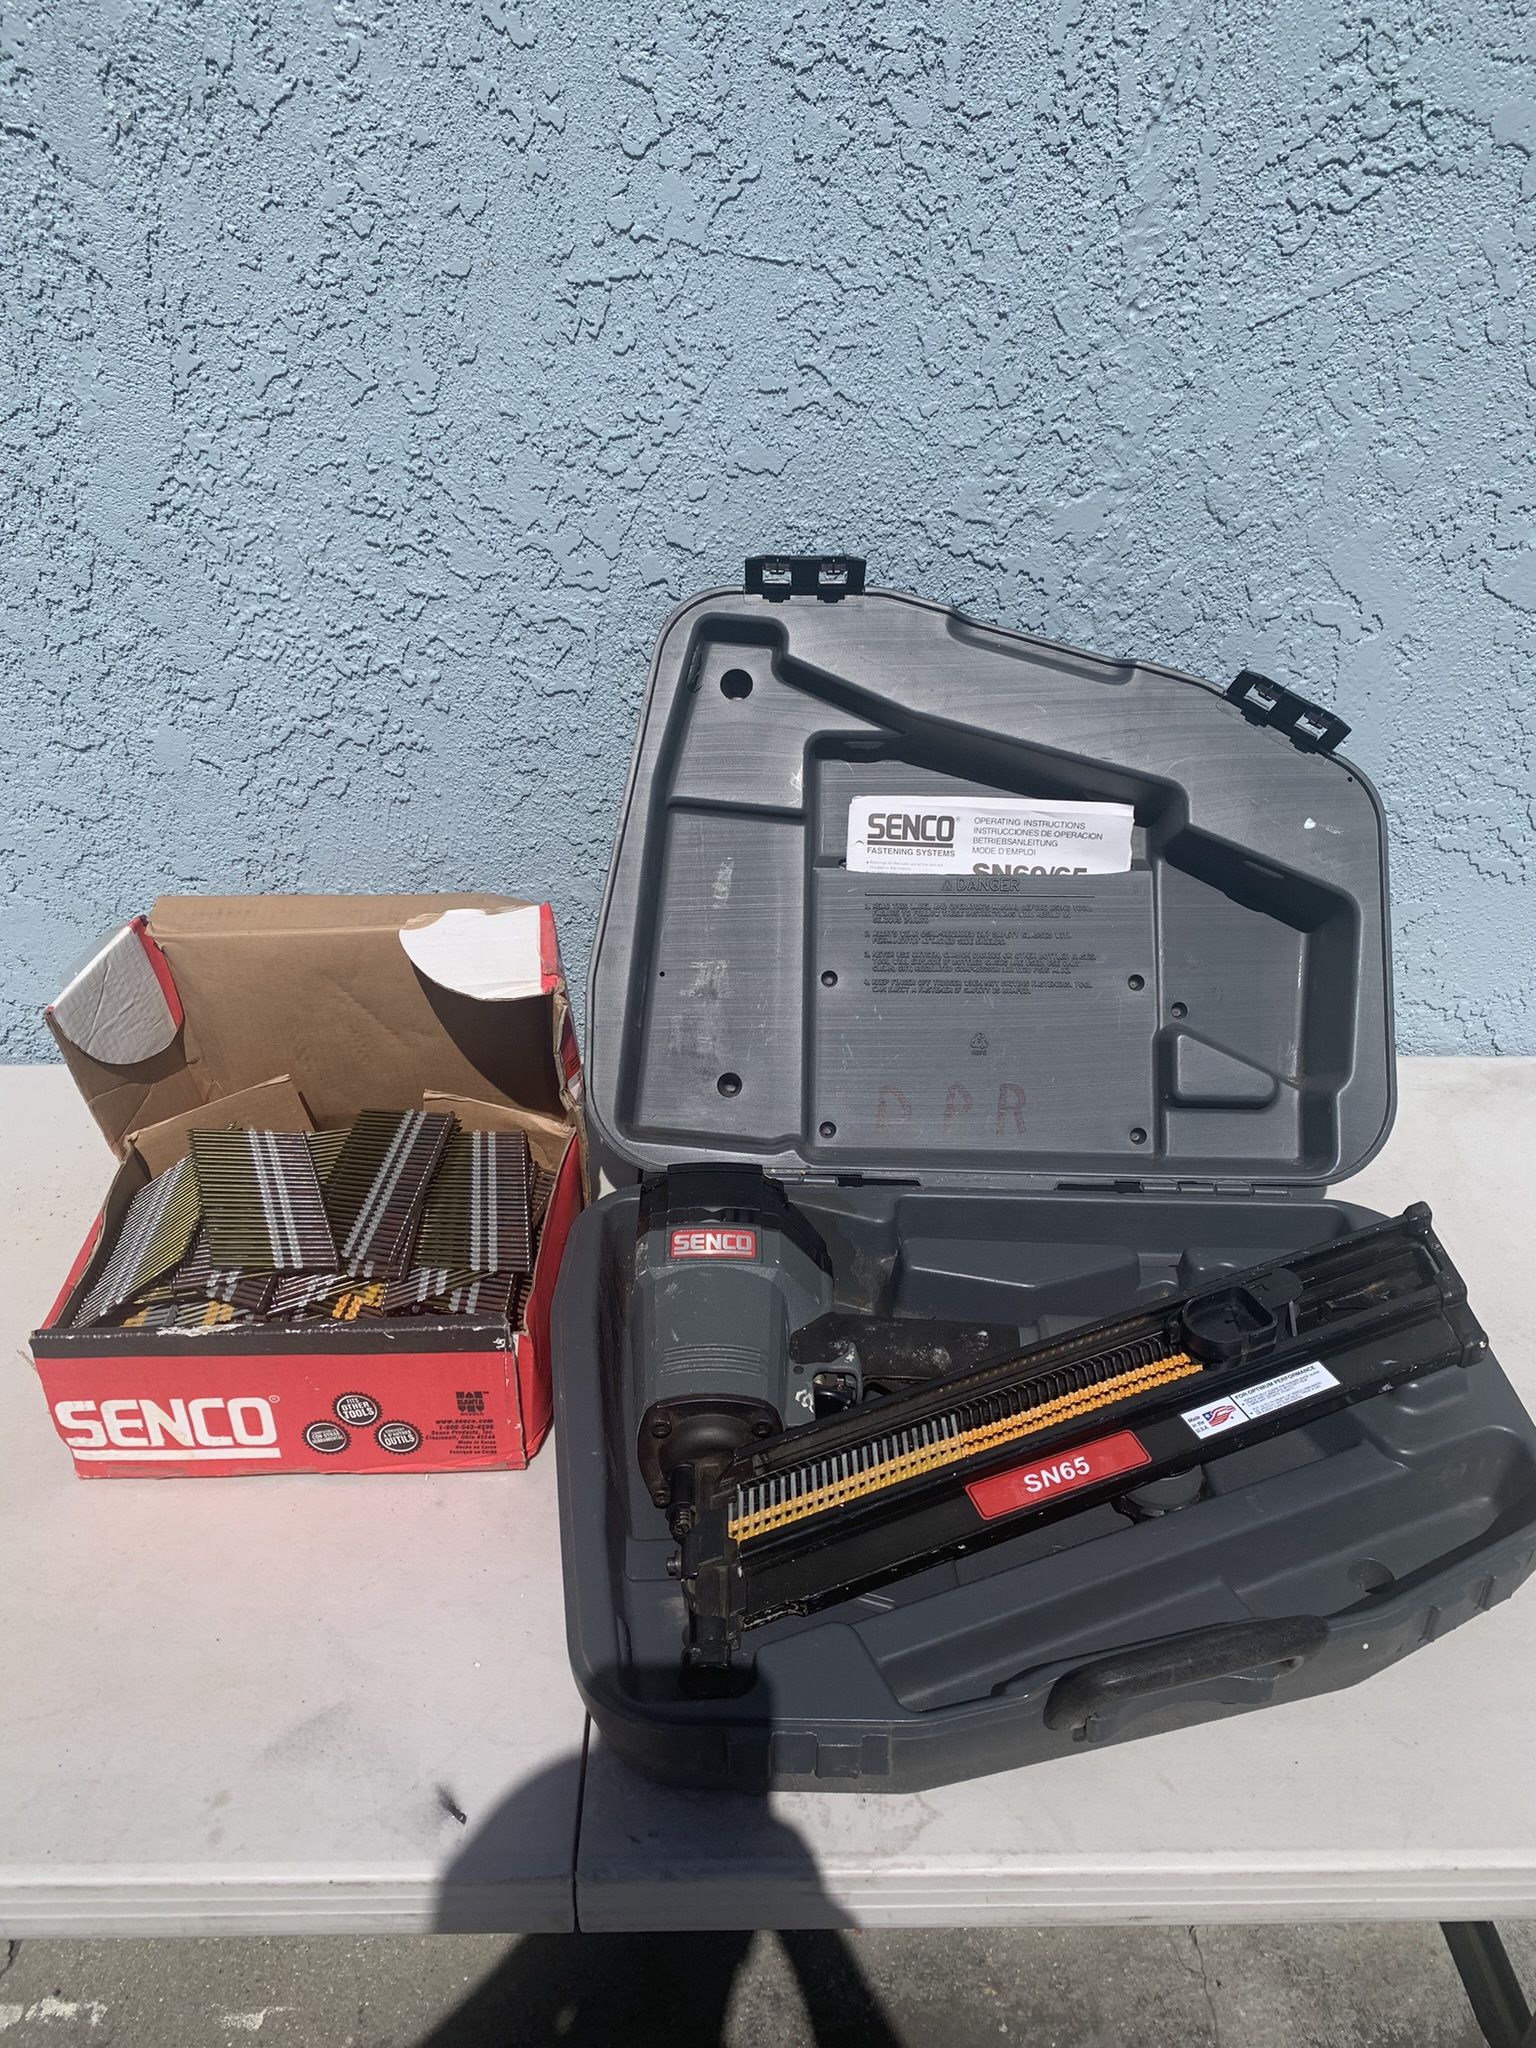 Senco Nail Gun And Box Of Senco Nails 